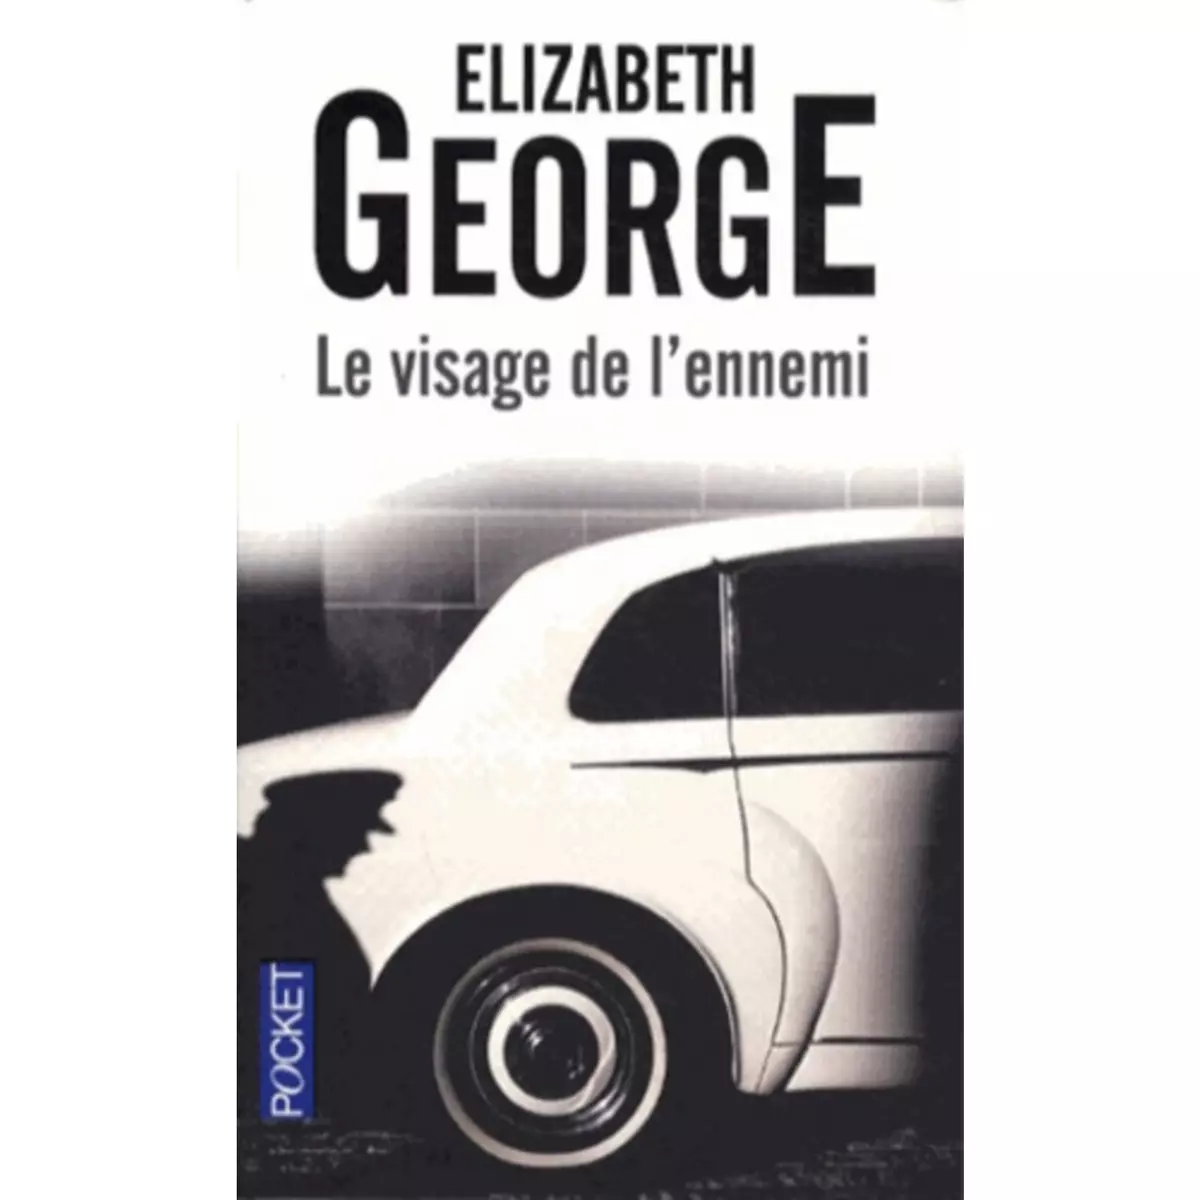  LE VISAGE DE L'ENNEMI, George Elizabeth